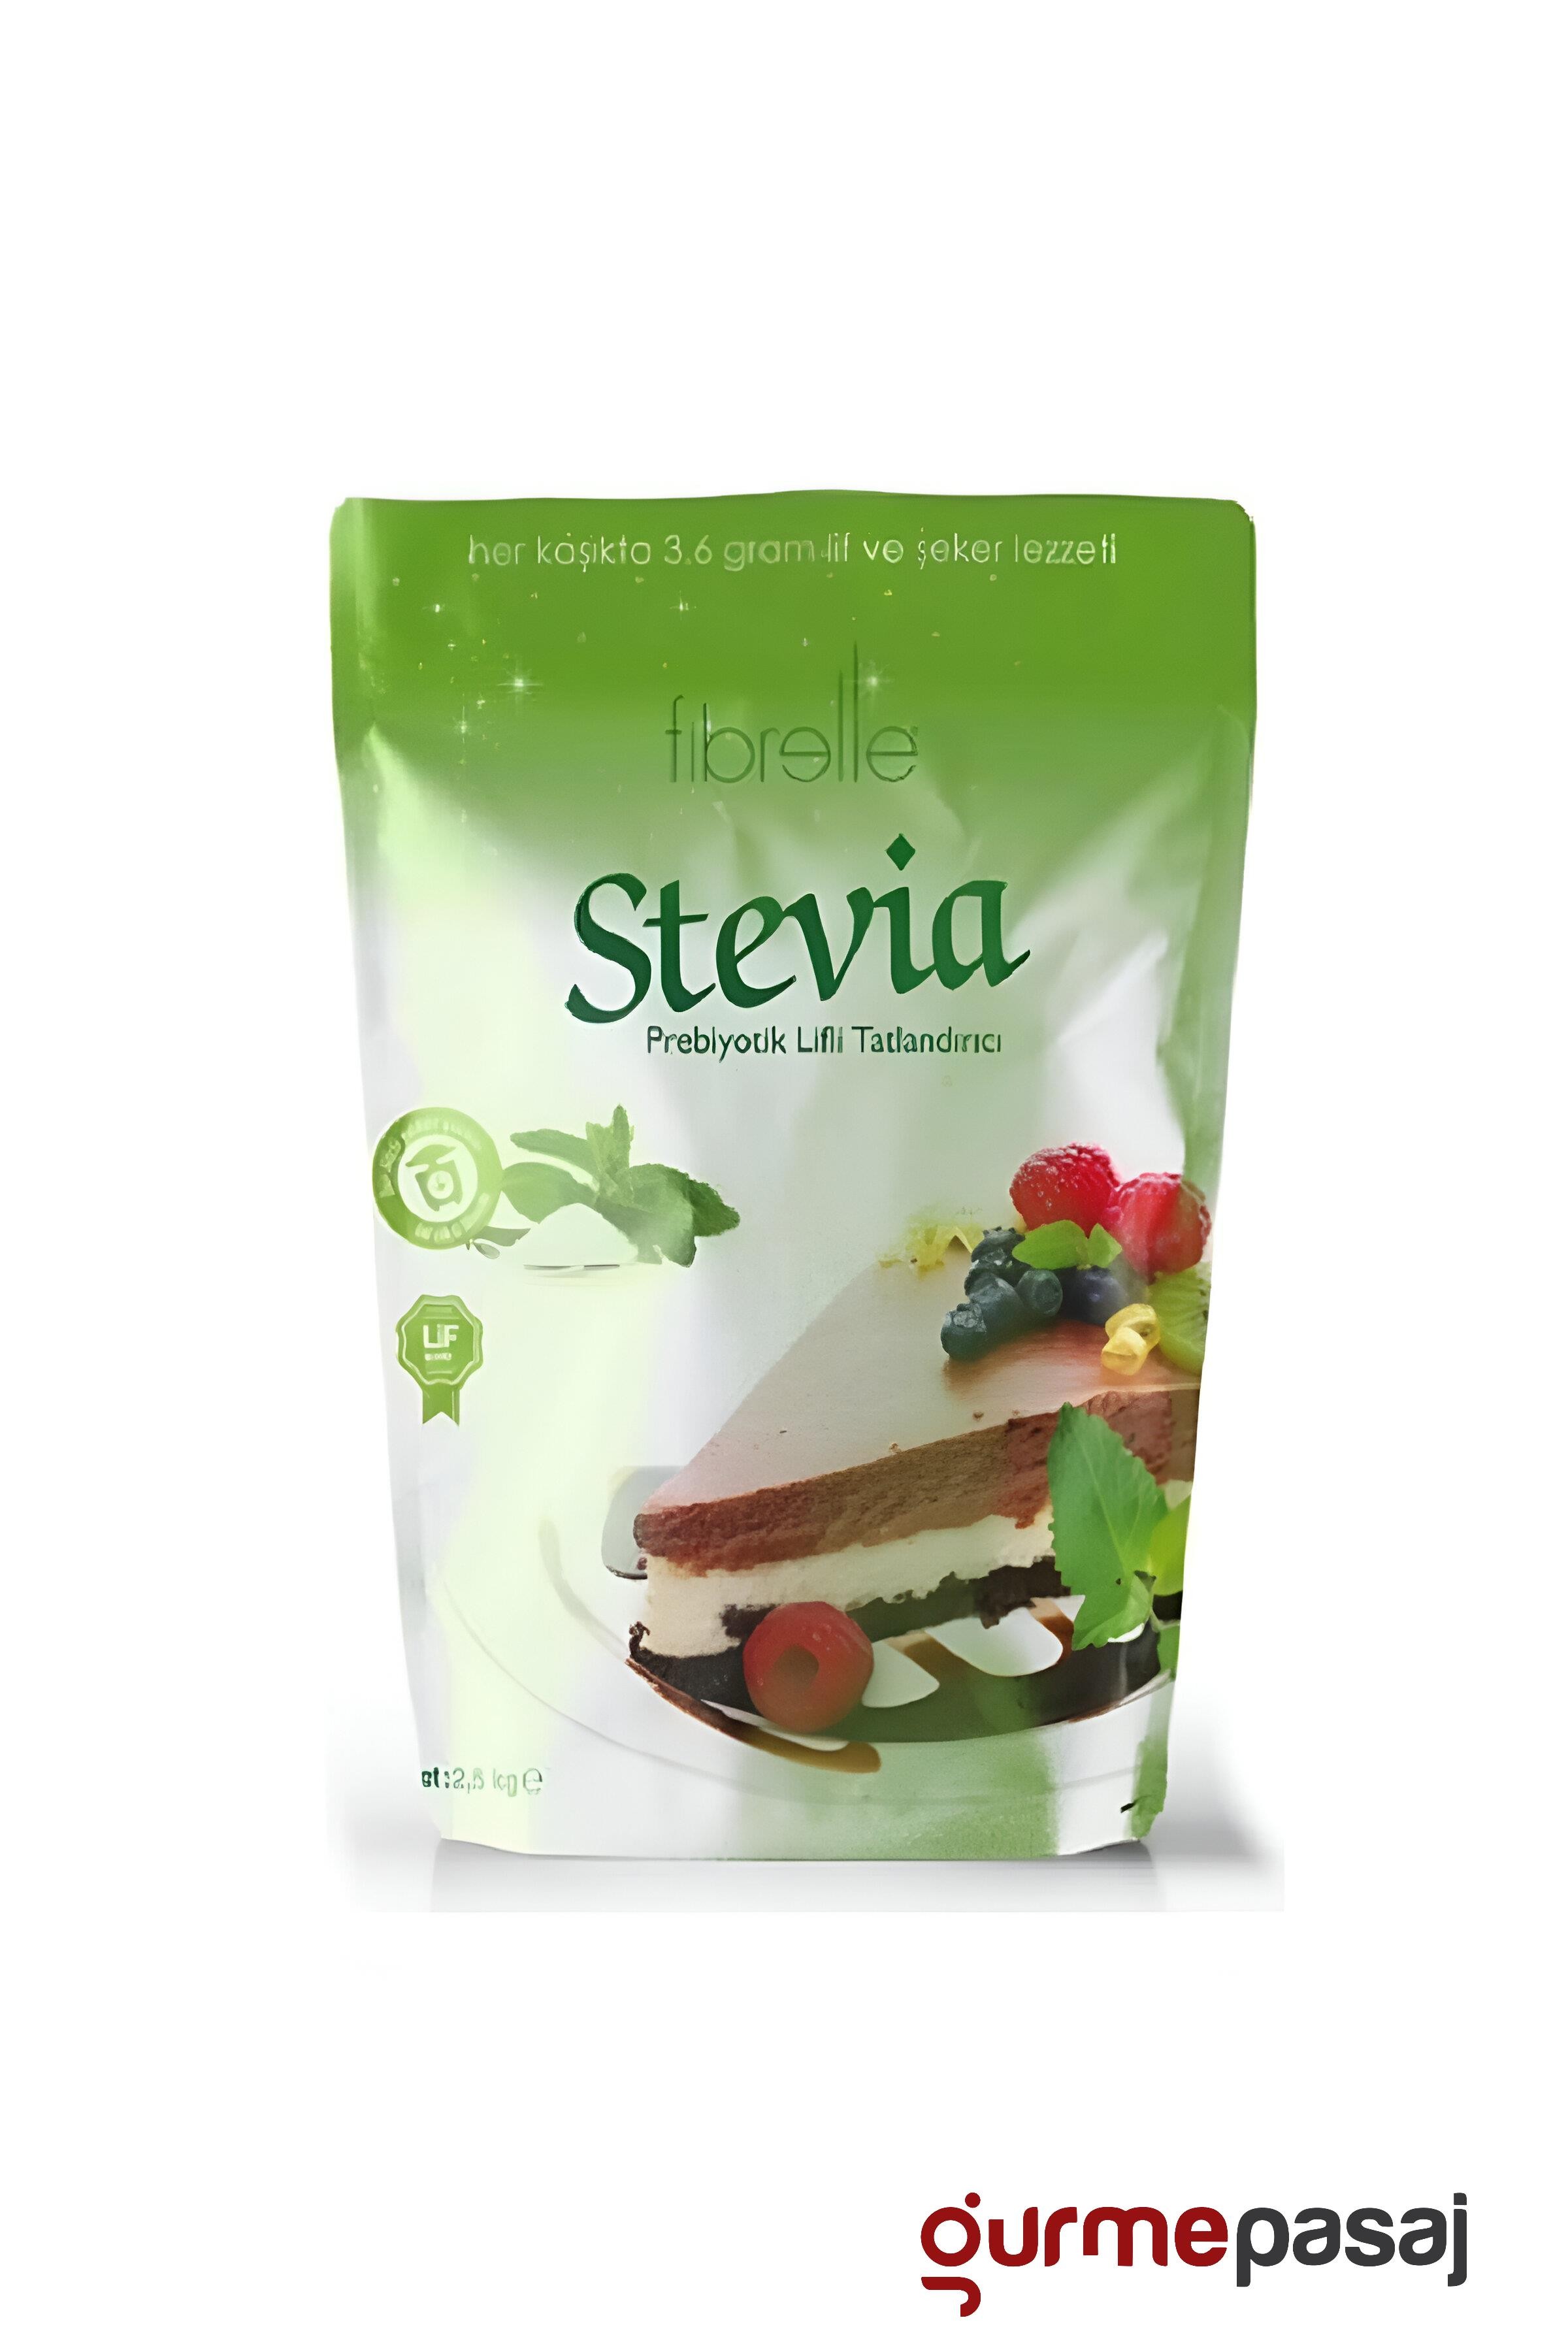 Fibrelle Prebiyotik Lifli Stevia Toz Tatlandırıcı 2.5 KG